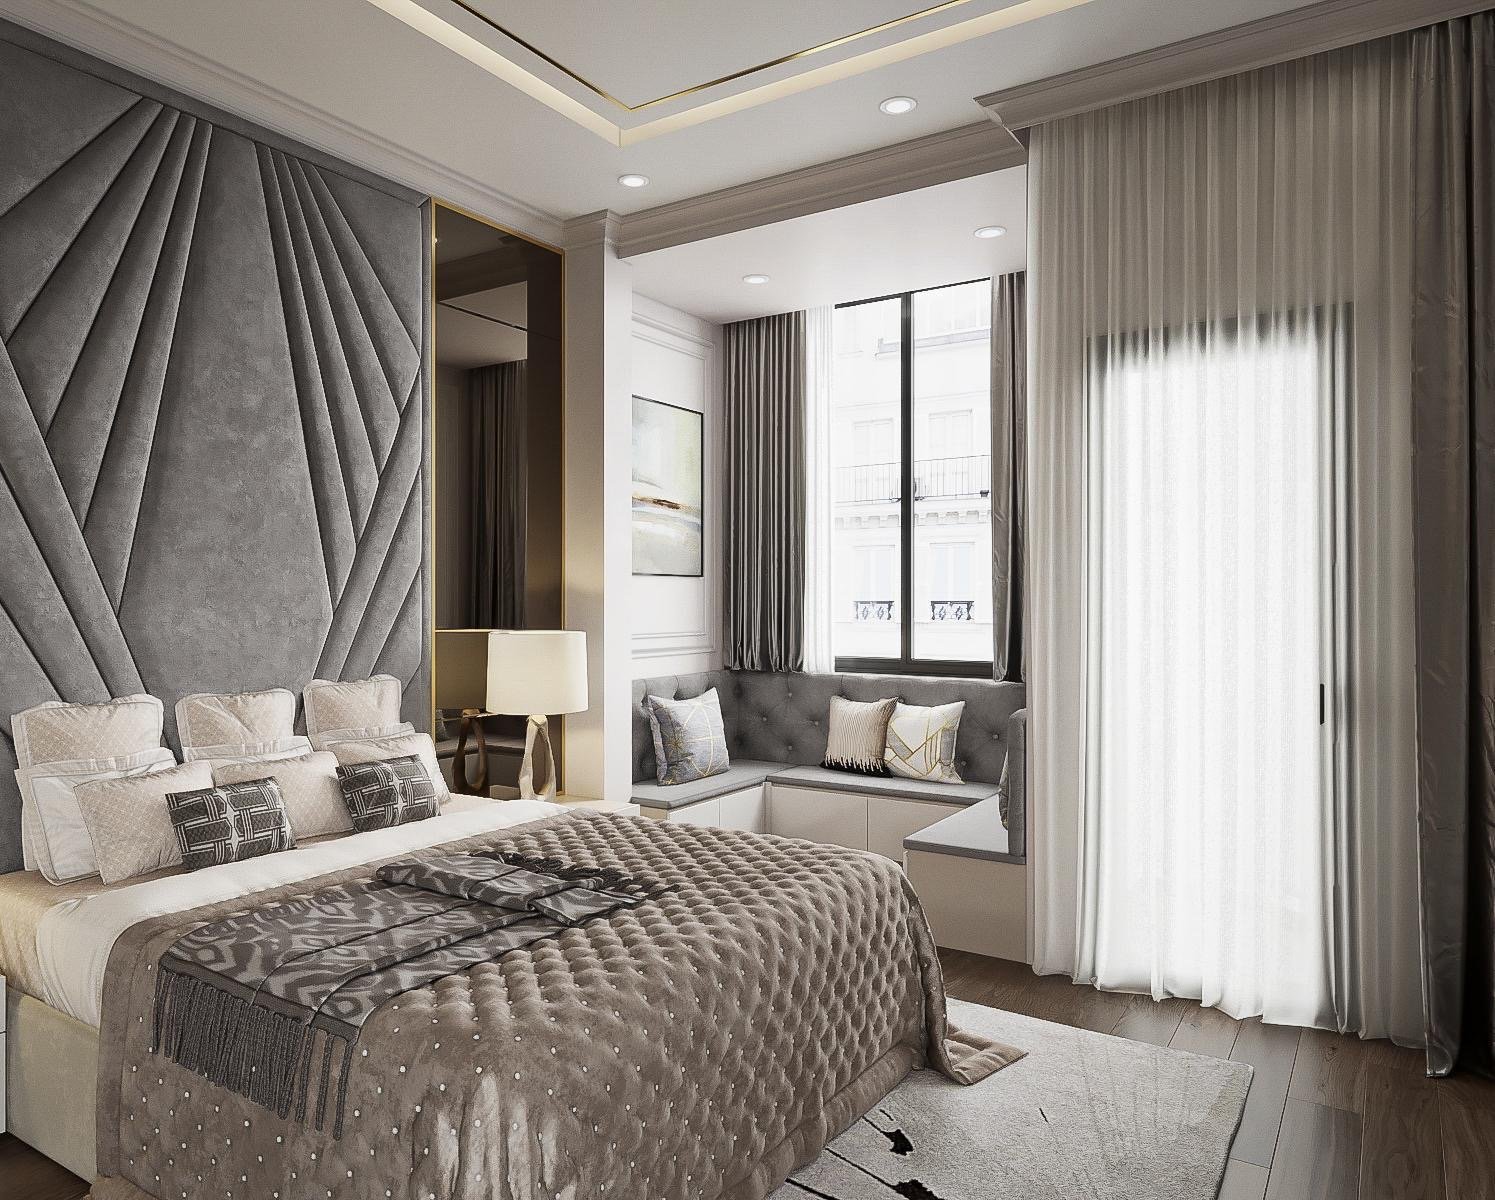 Phòng ngủ, phong cách Hiện đại Modern, thiết kế concept nội thất, nhà phố Quận Bình Tân